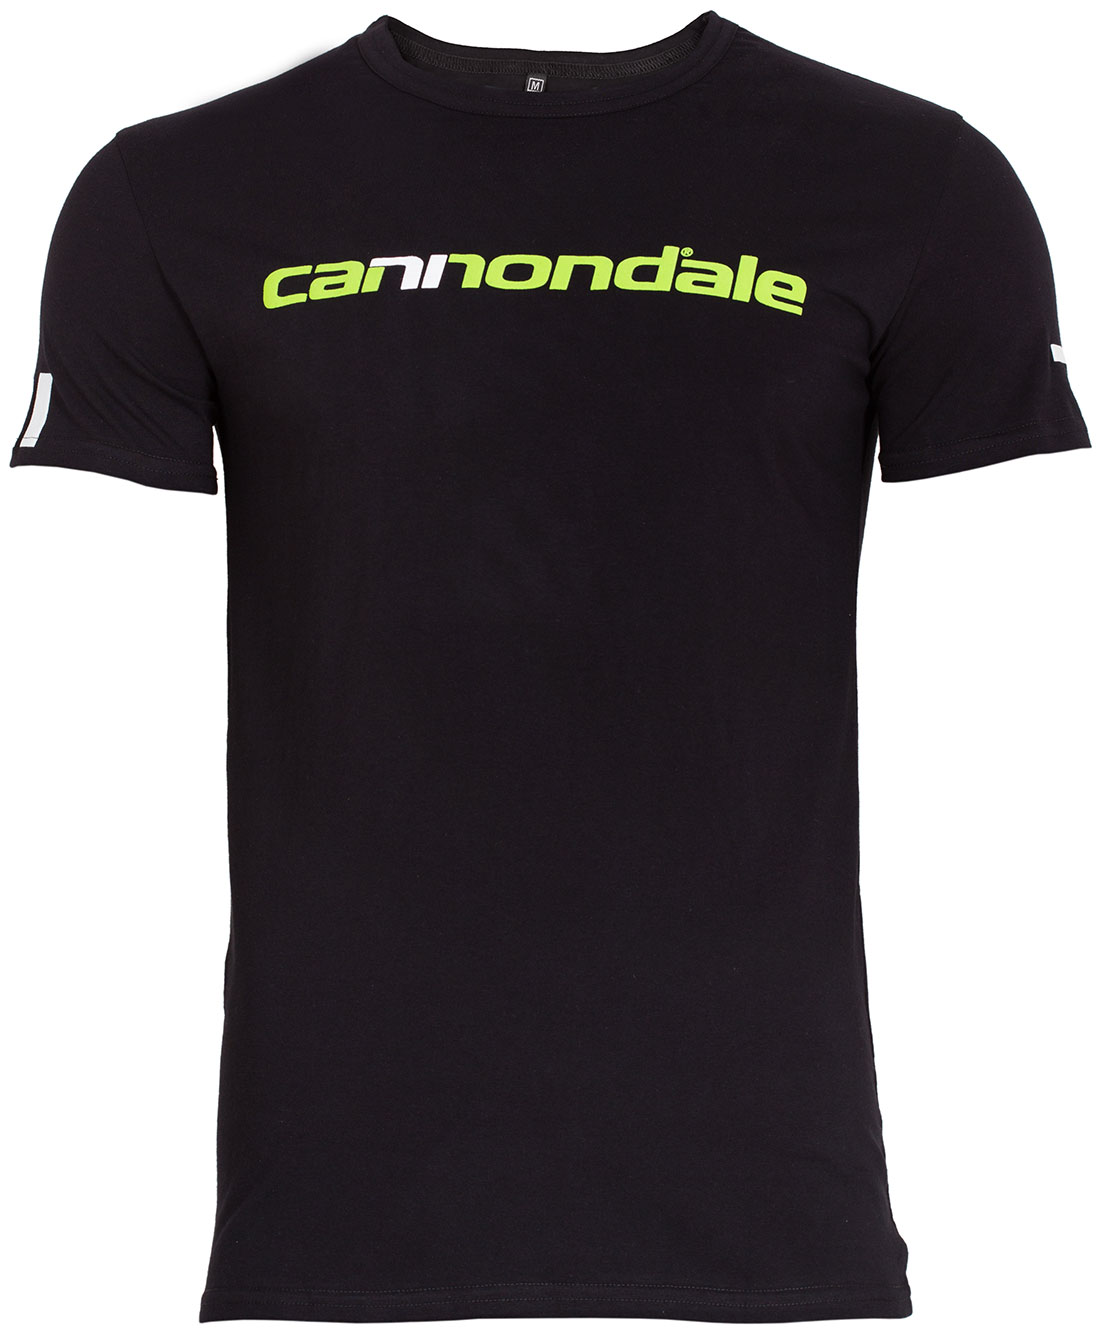 Футболка Cannondale с горизонтальным двухцветным логотипом, черная, размер XL фото 